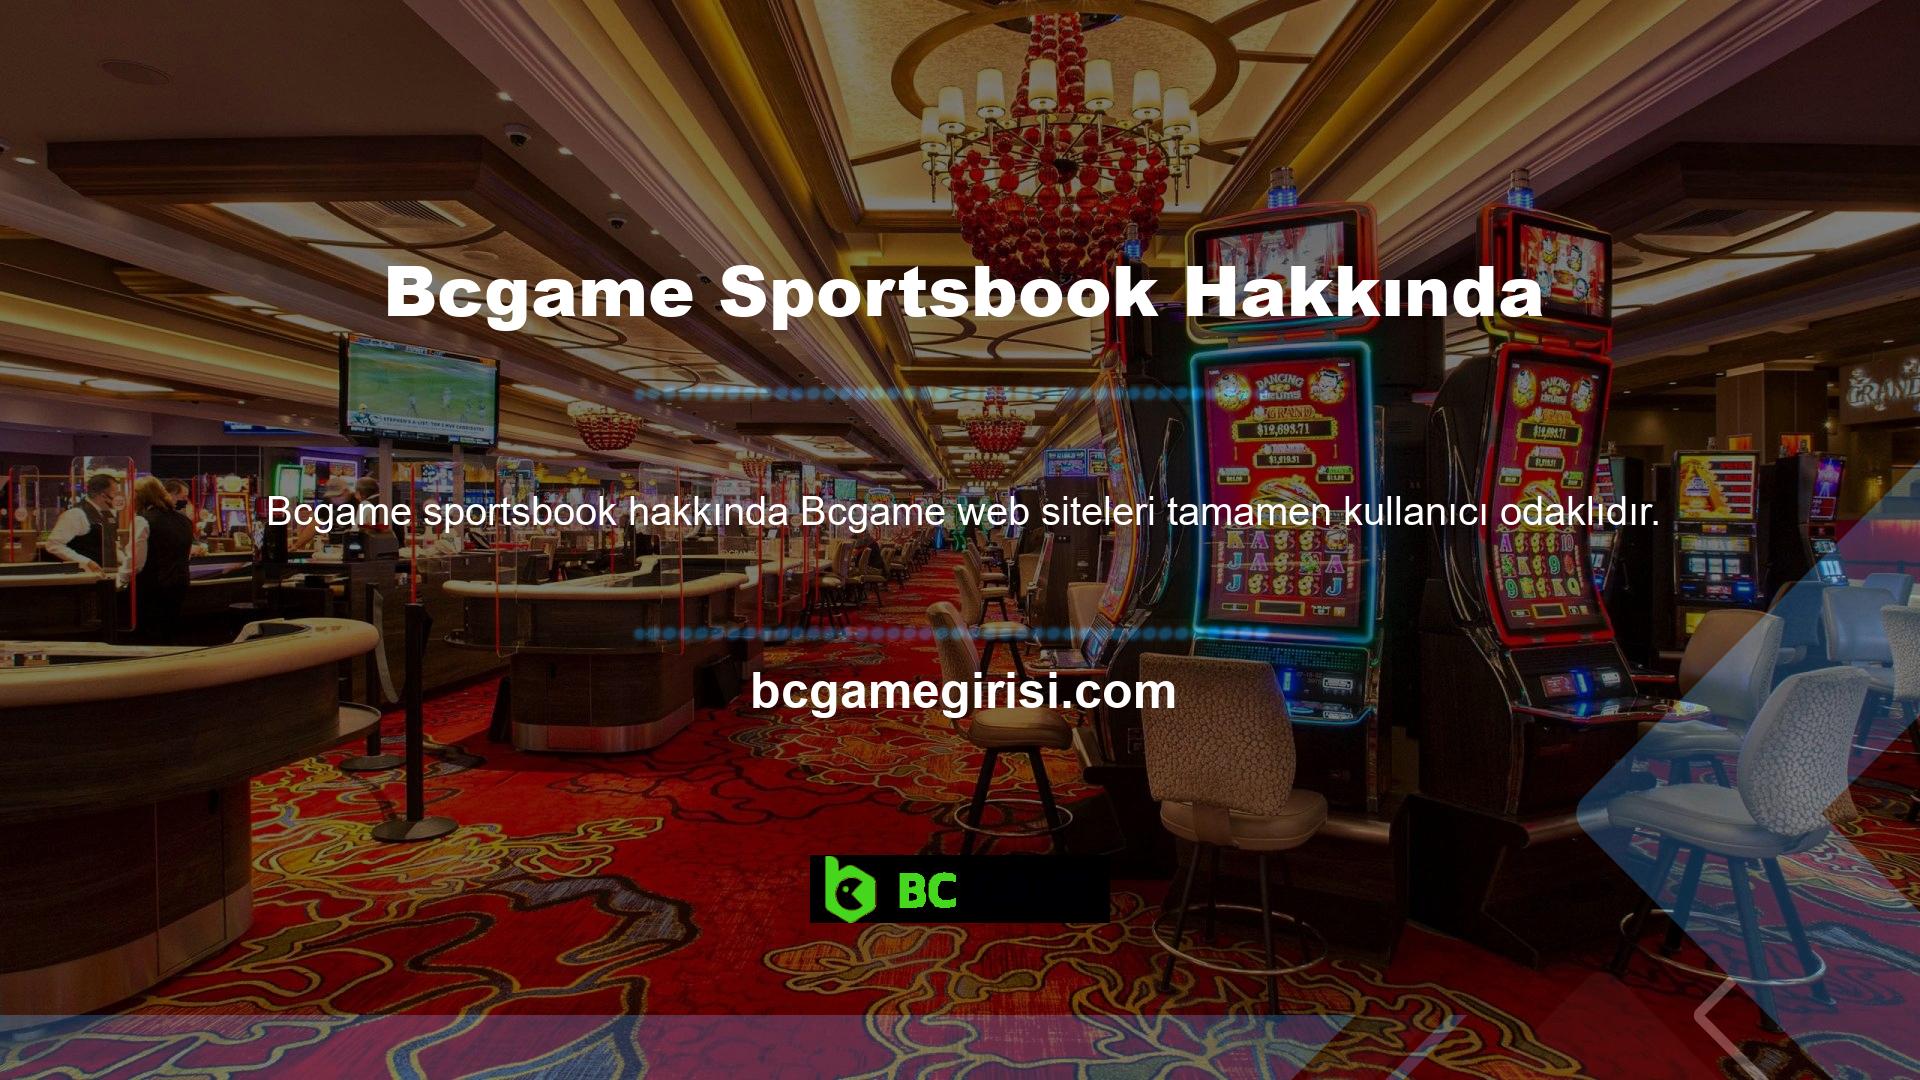 Bu nedenle Bcgame, web sitesinde spor bahisleri, slotlar ve diğer alanlara odaklanmaktadır